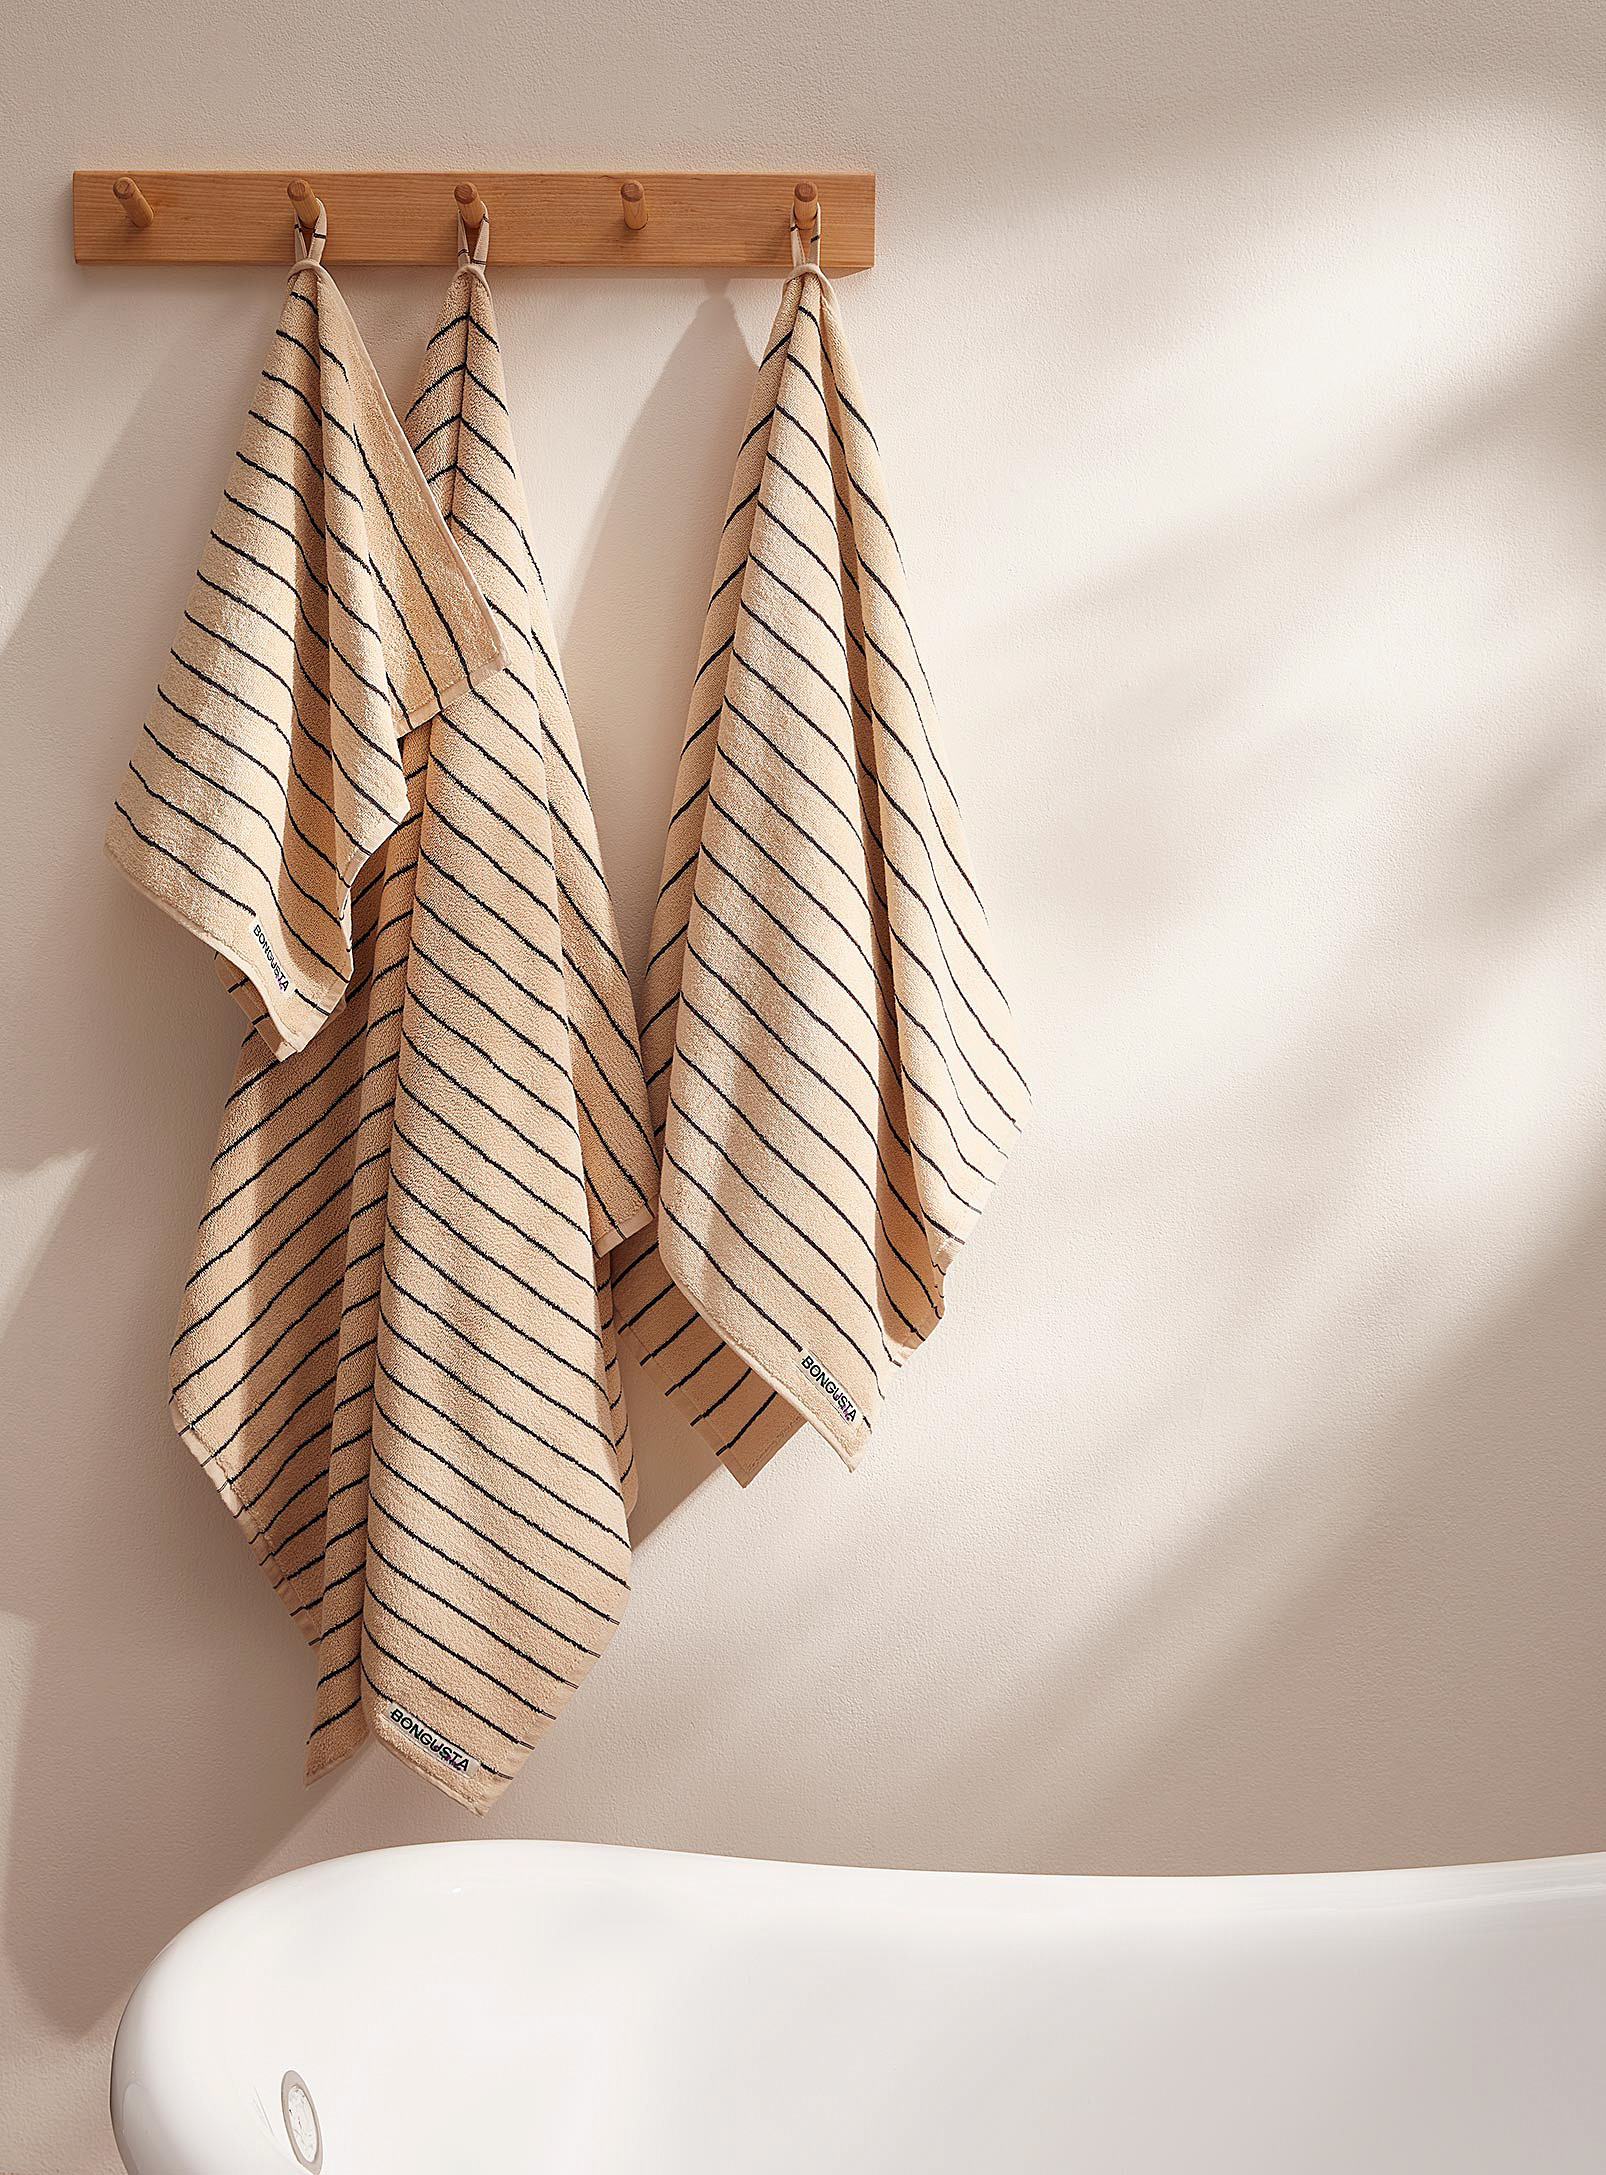 Bongusta Naram Striped Towels In Patterned Ecru